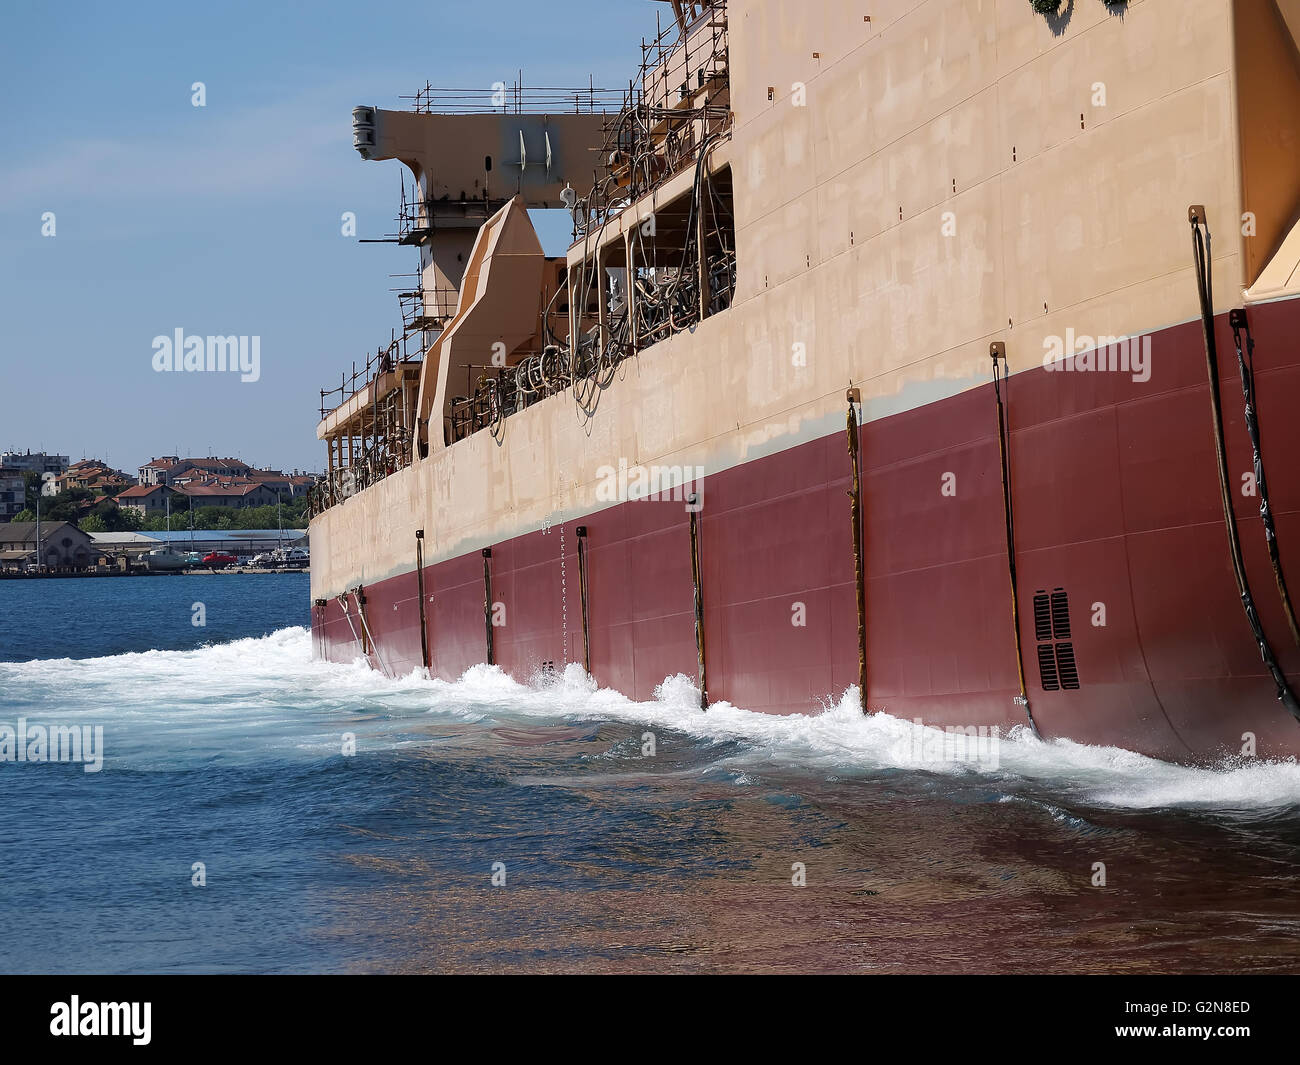 ship launching in shipyard, side view Stock Photo